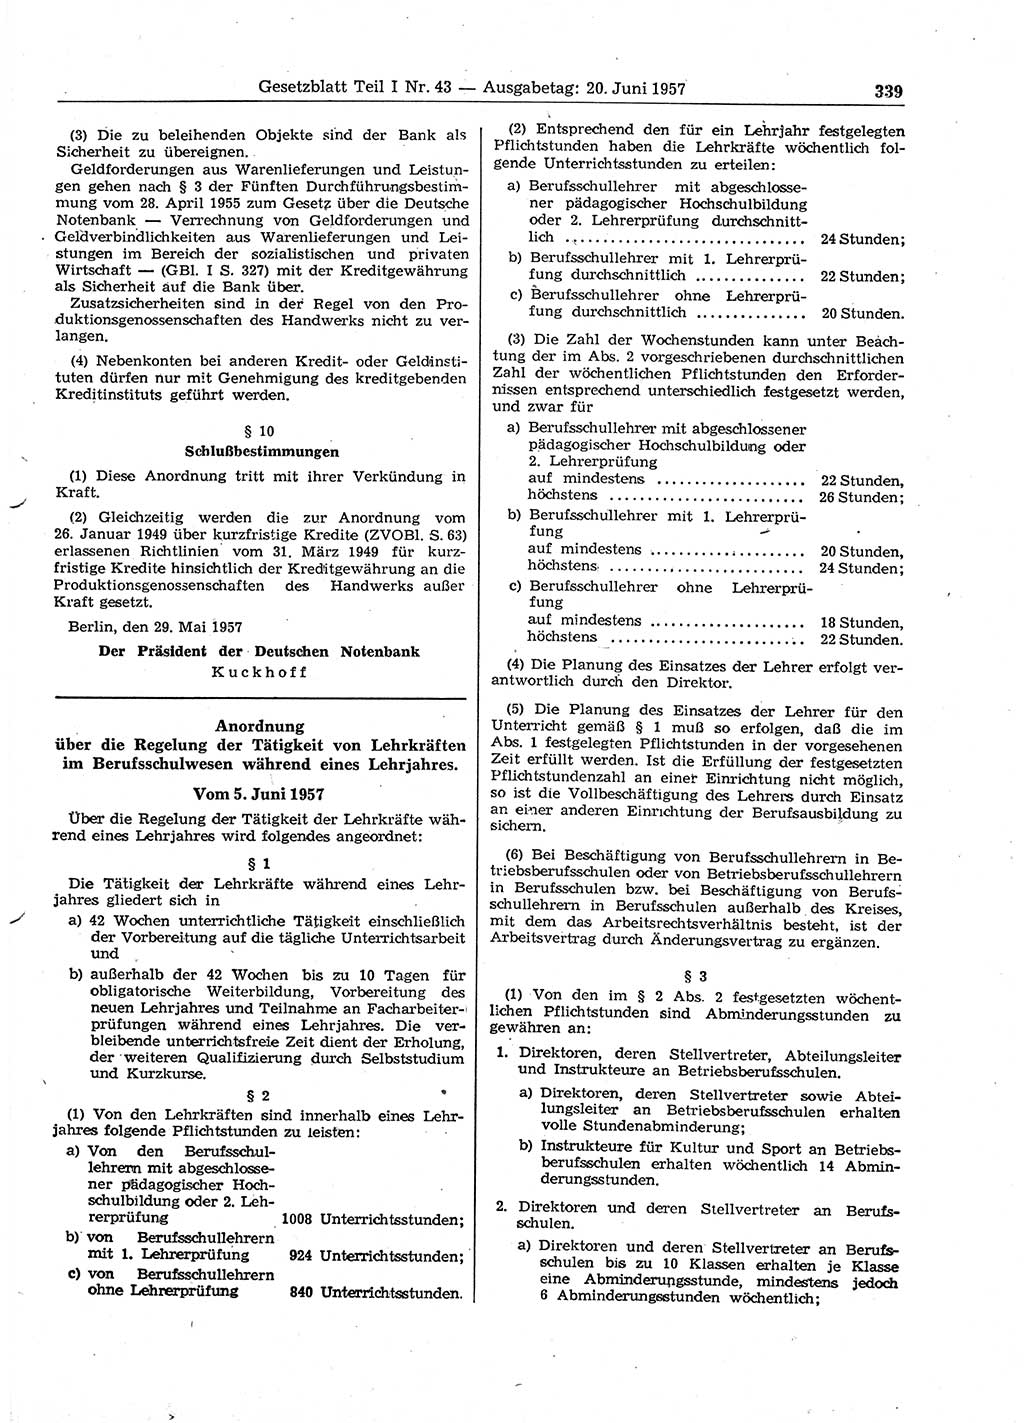 Gesetzblatt (GBl.) der Deutschen Demokratischen Republik (DDR) Teil Ⅰ 1957, Seite 339 (GBl. DDR Ⅰ 1957, S. 339)